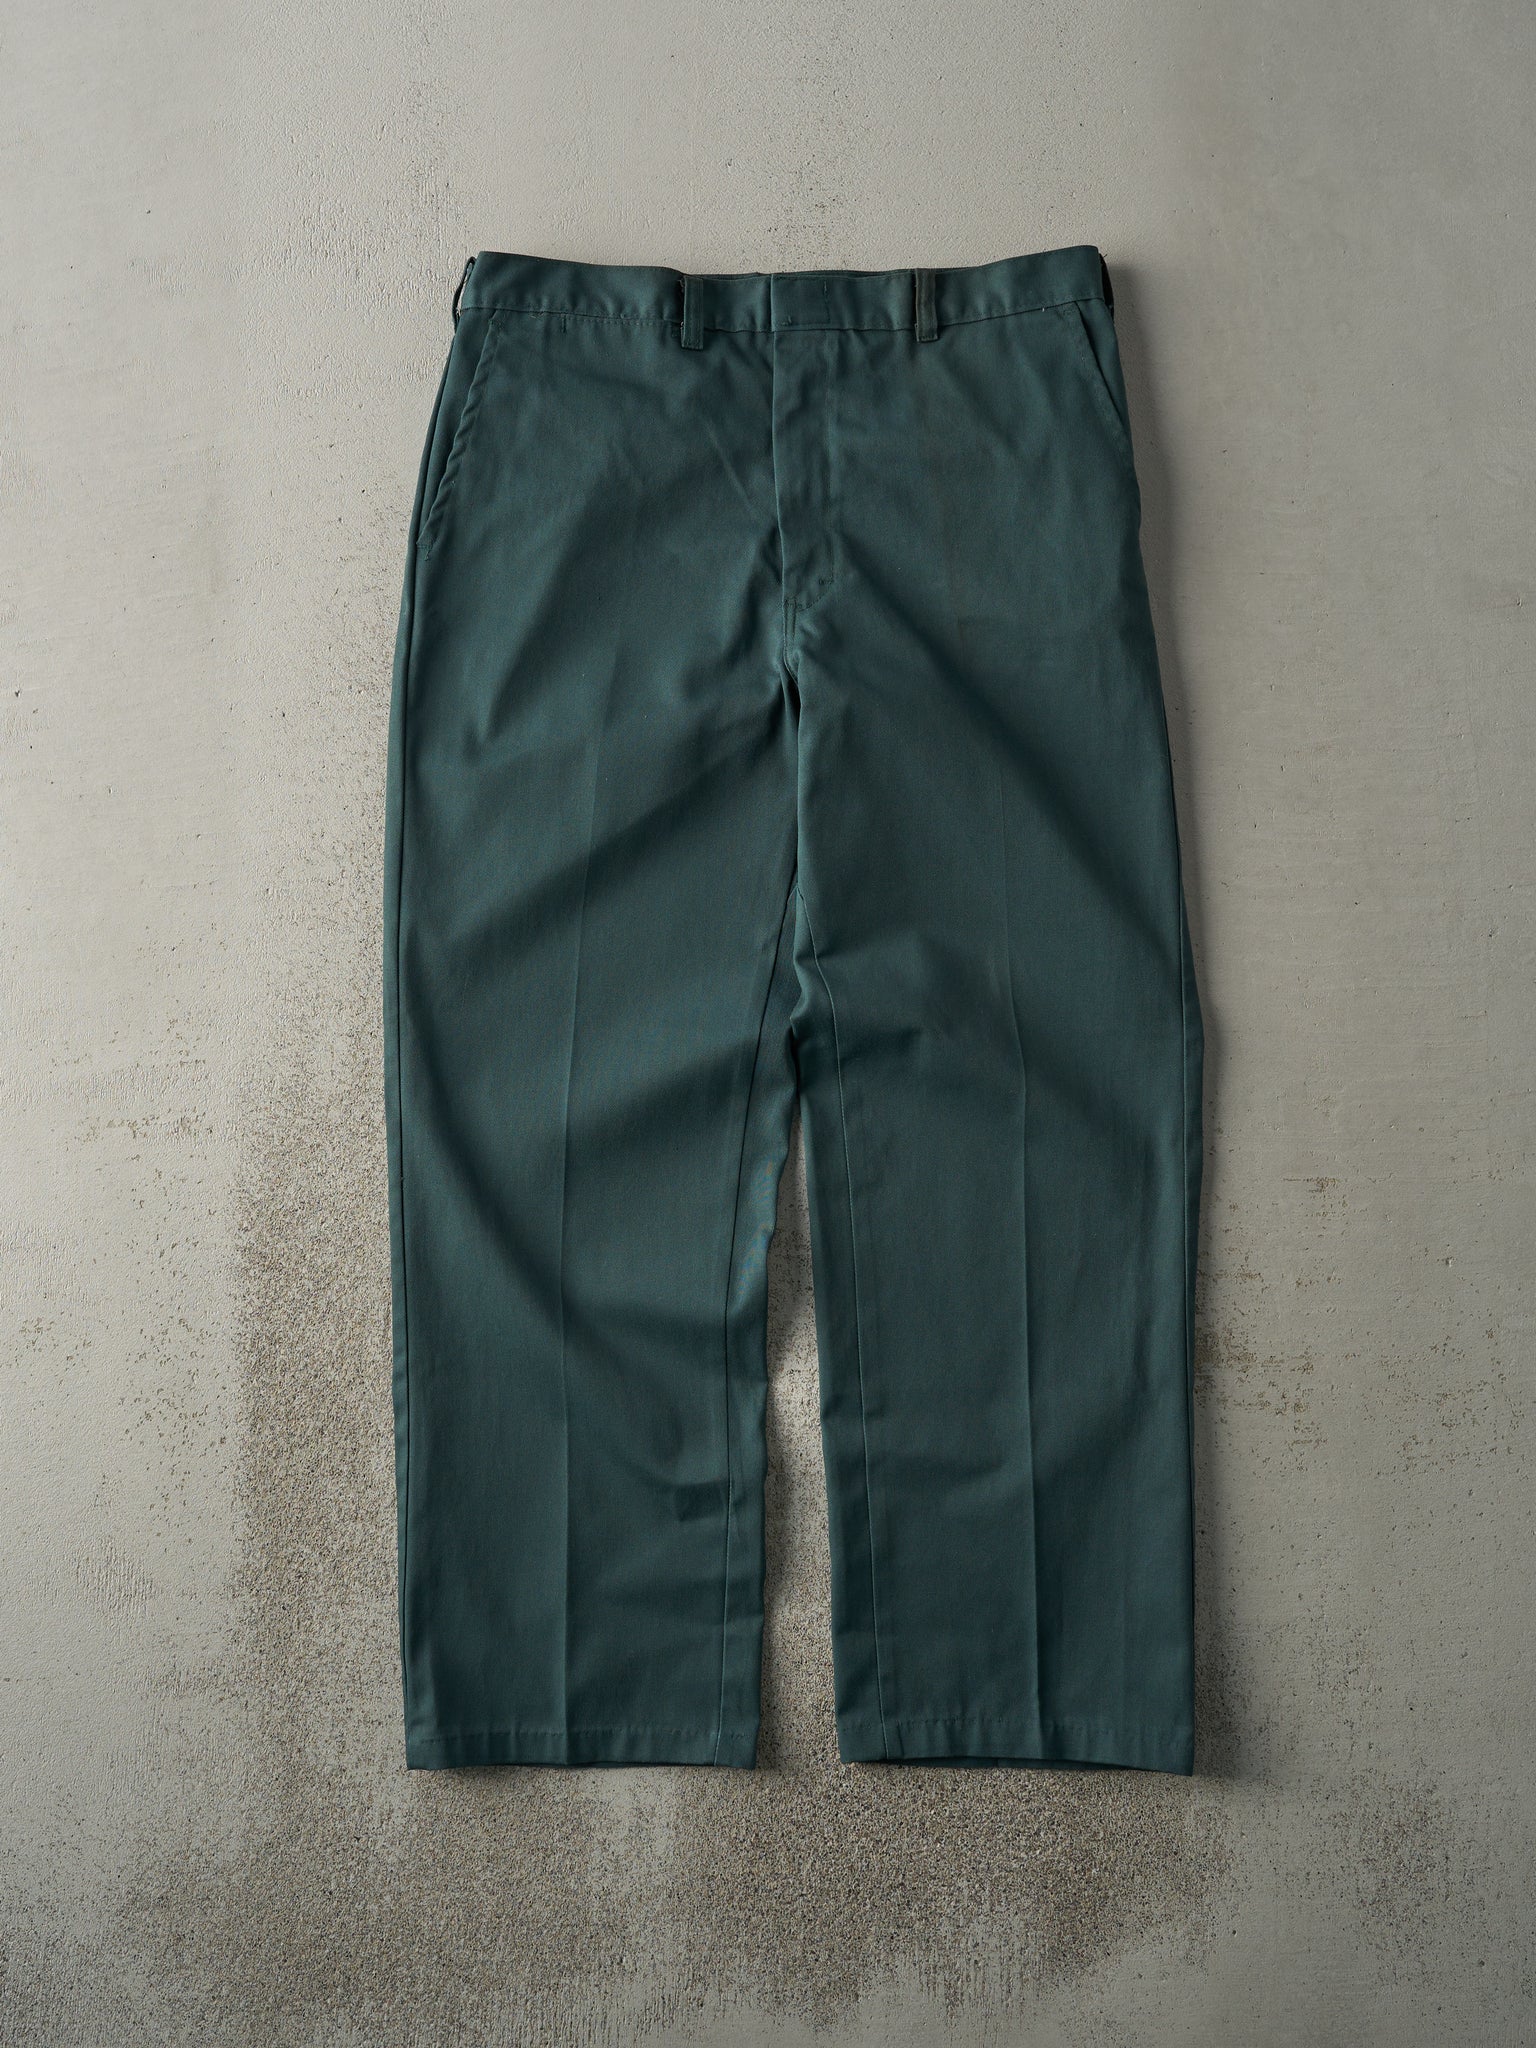 Vintage 80s Green Sears Work Pants (35x28.5)